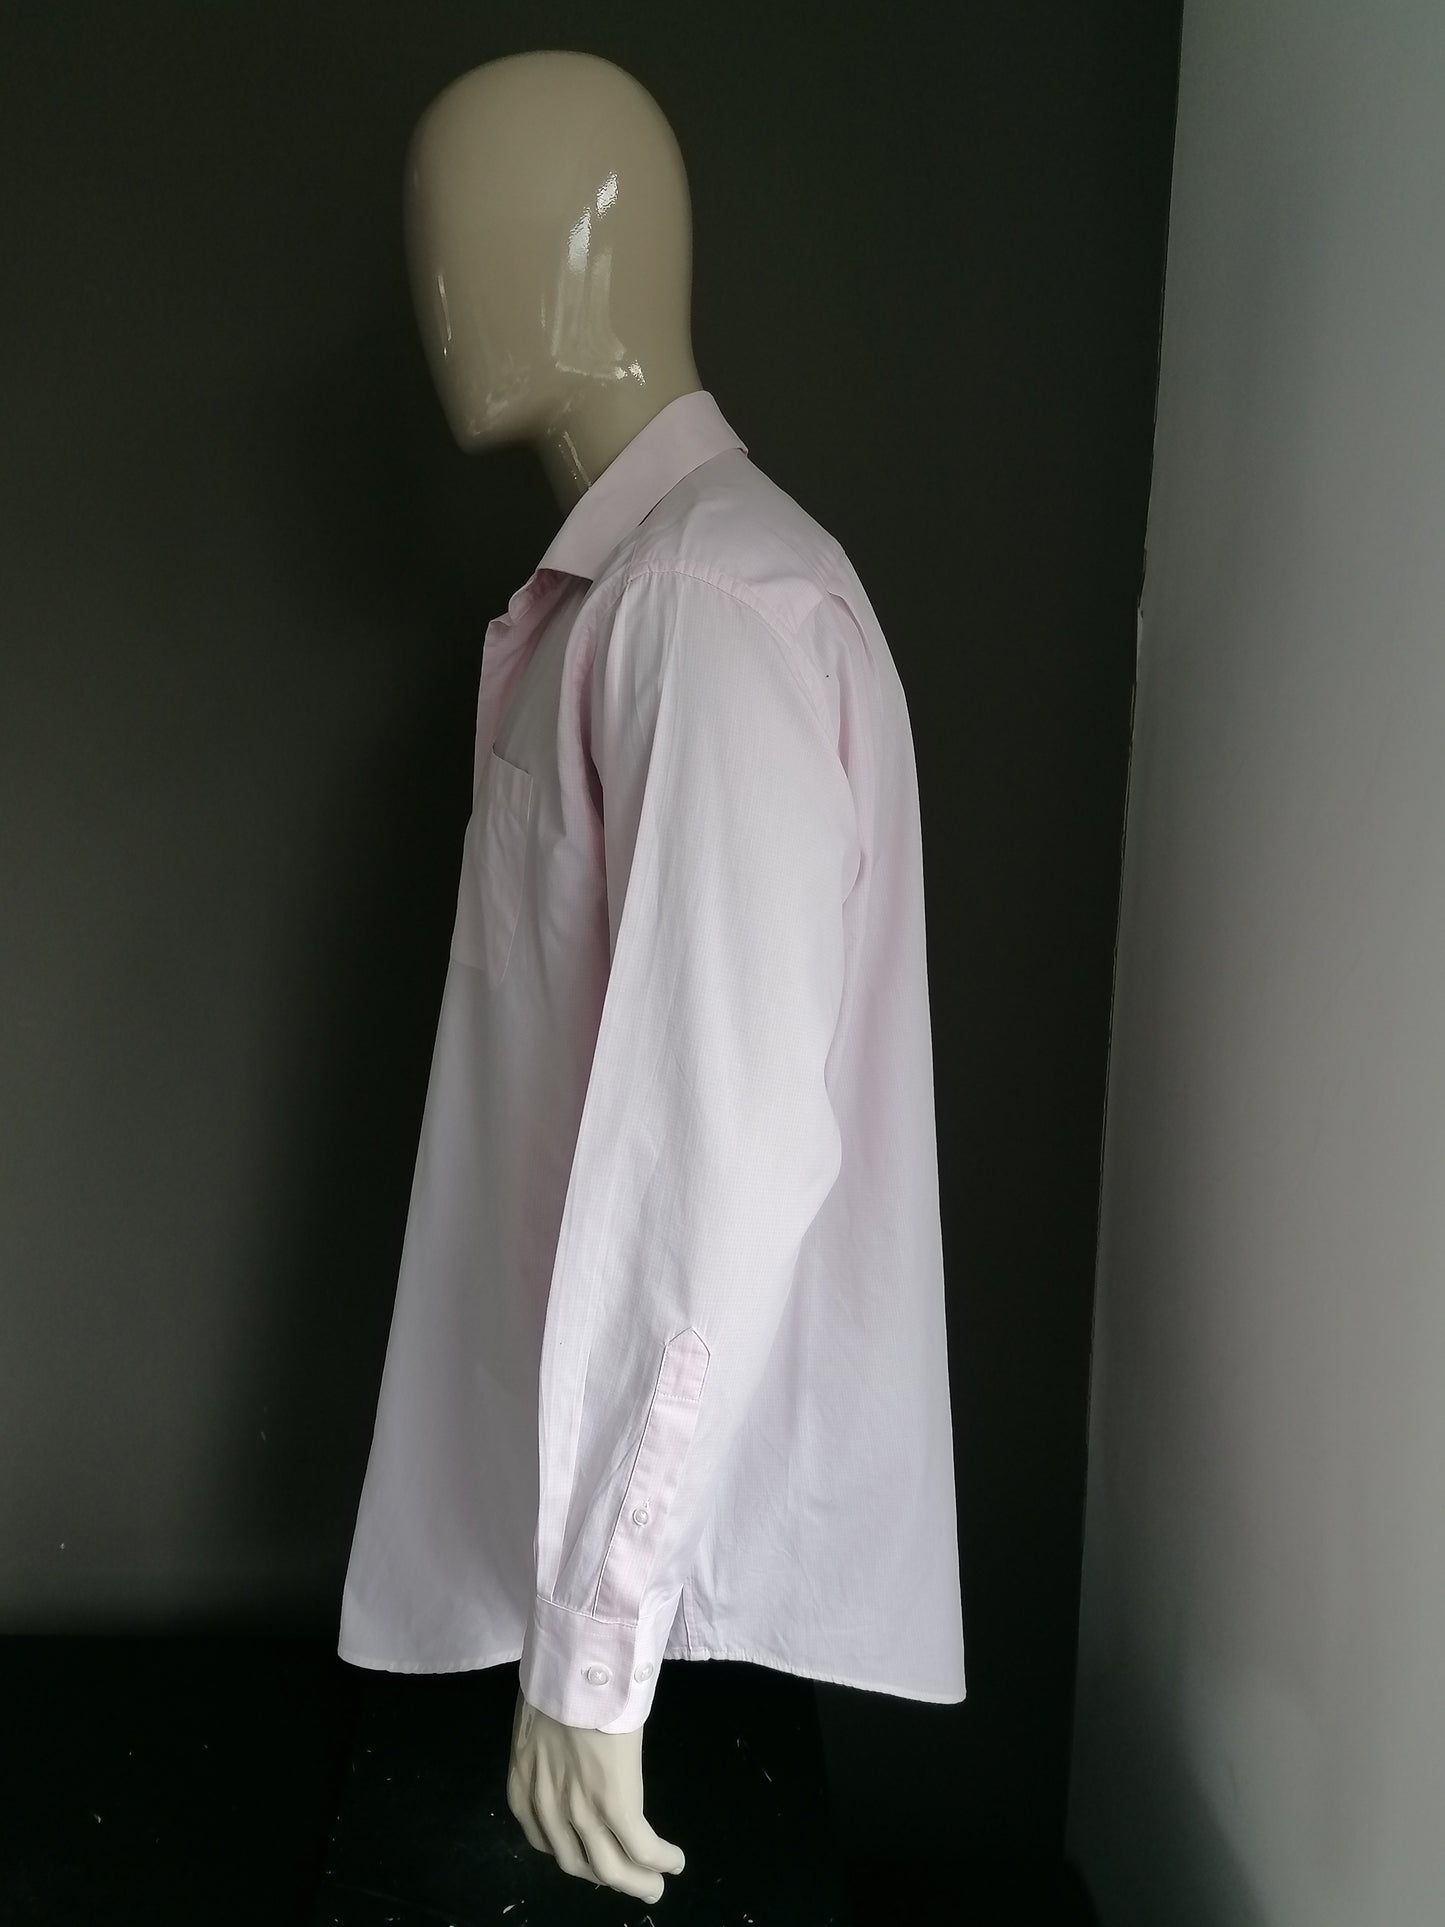 Motivo bianco rosa della camicia di nautica. Taglia XXL / 2XL